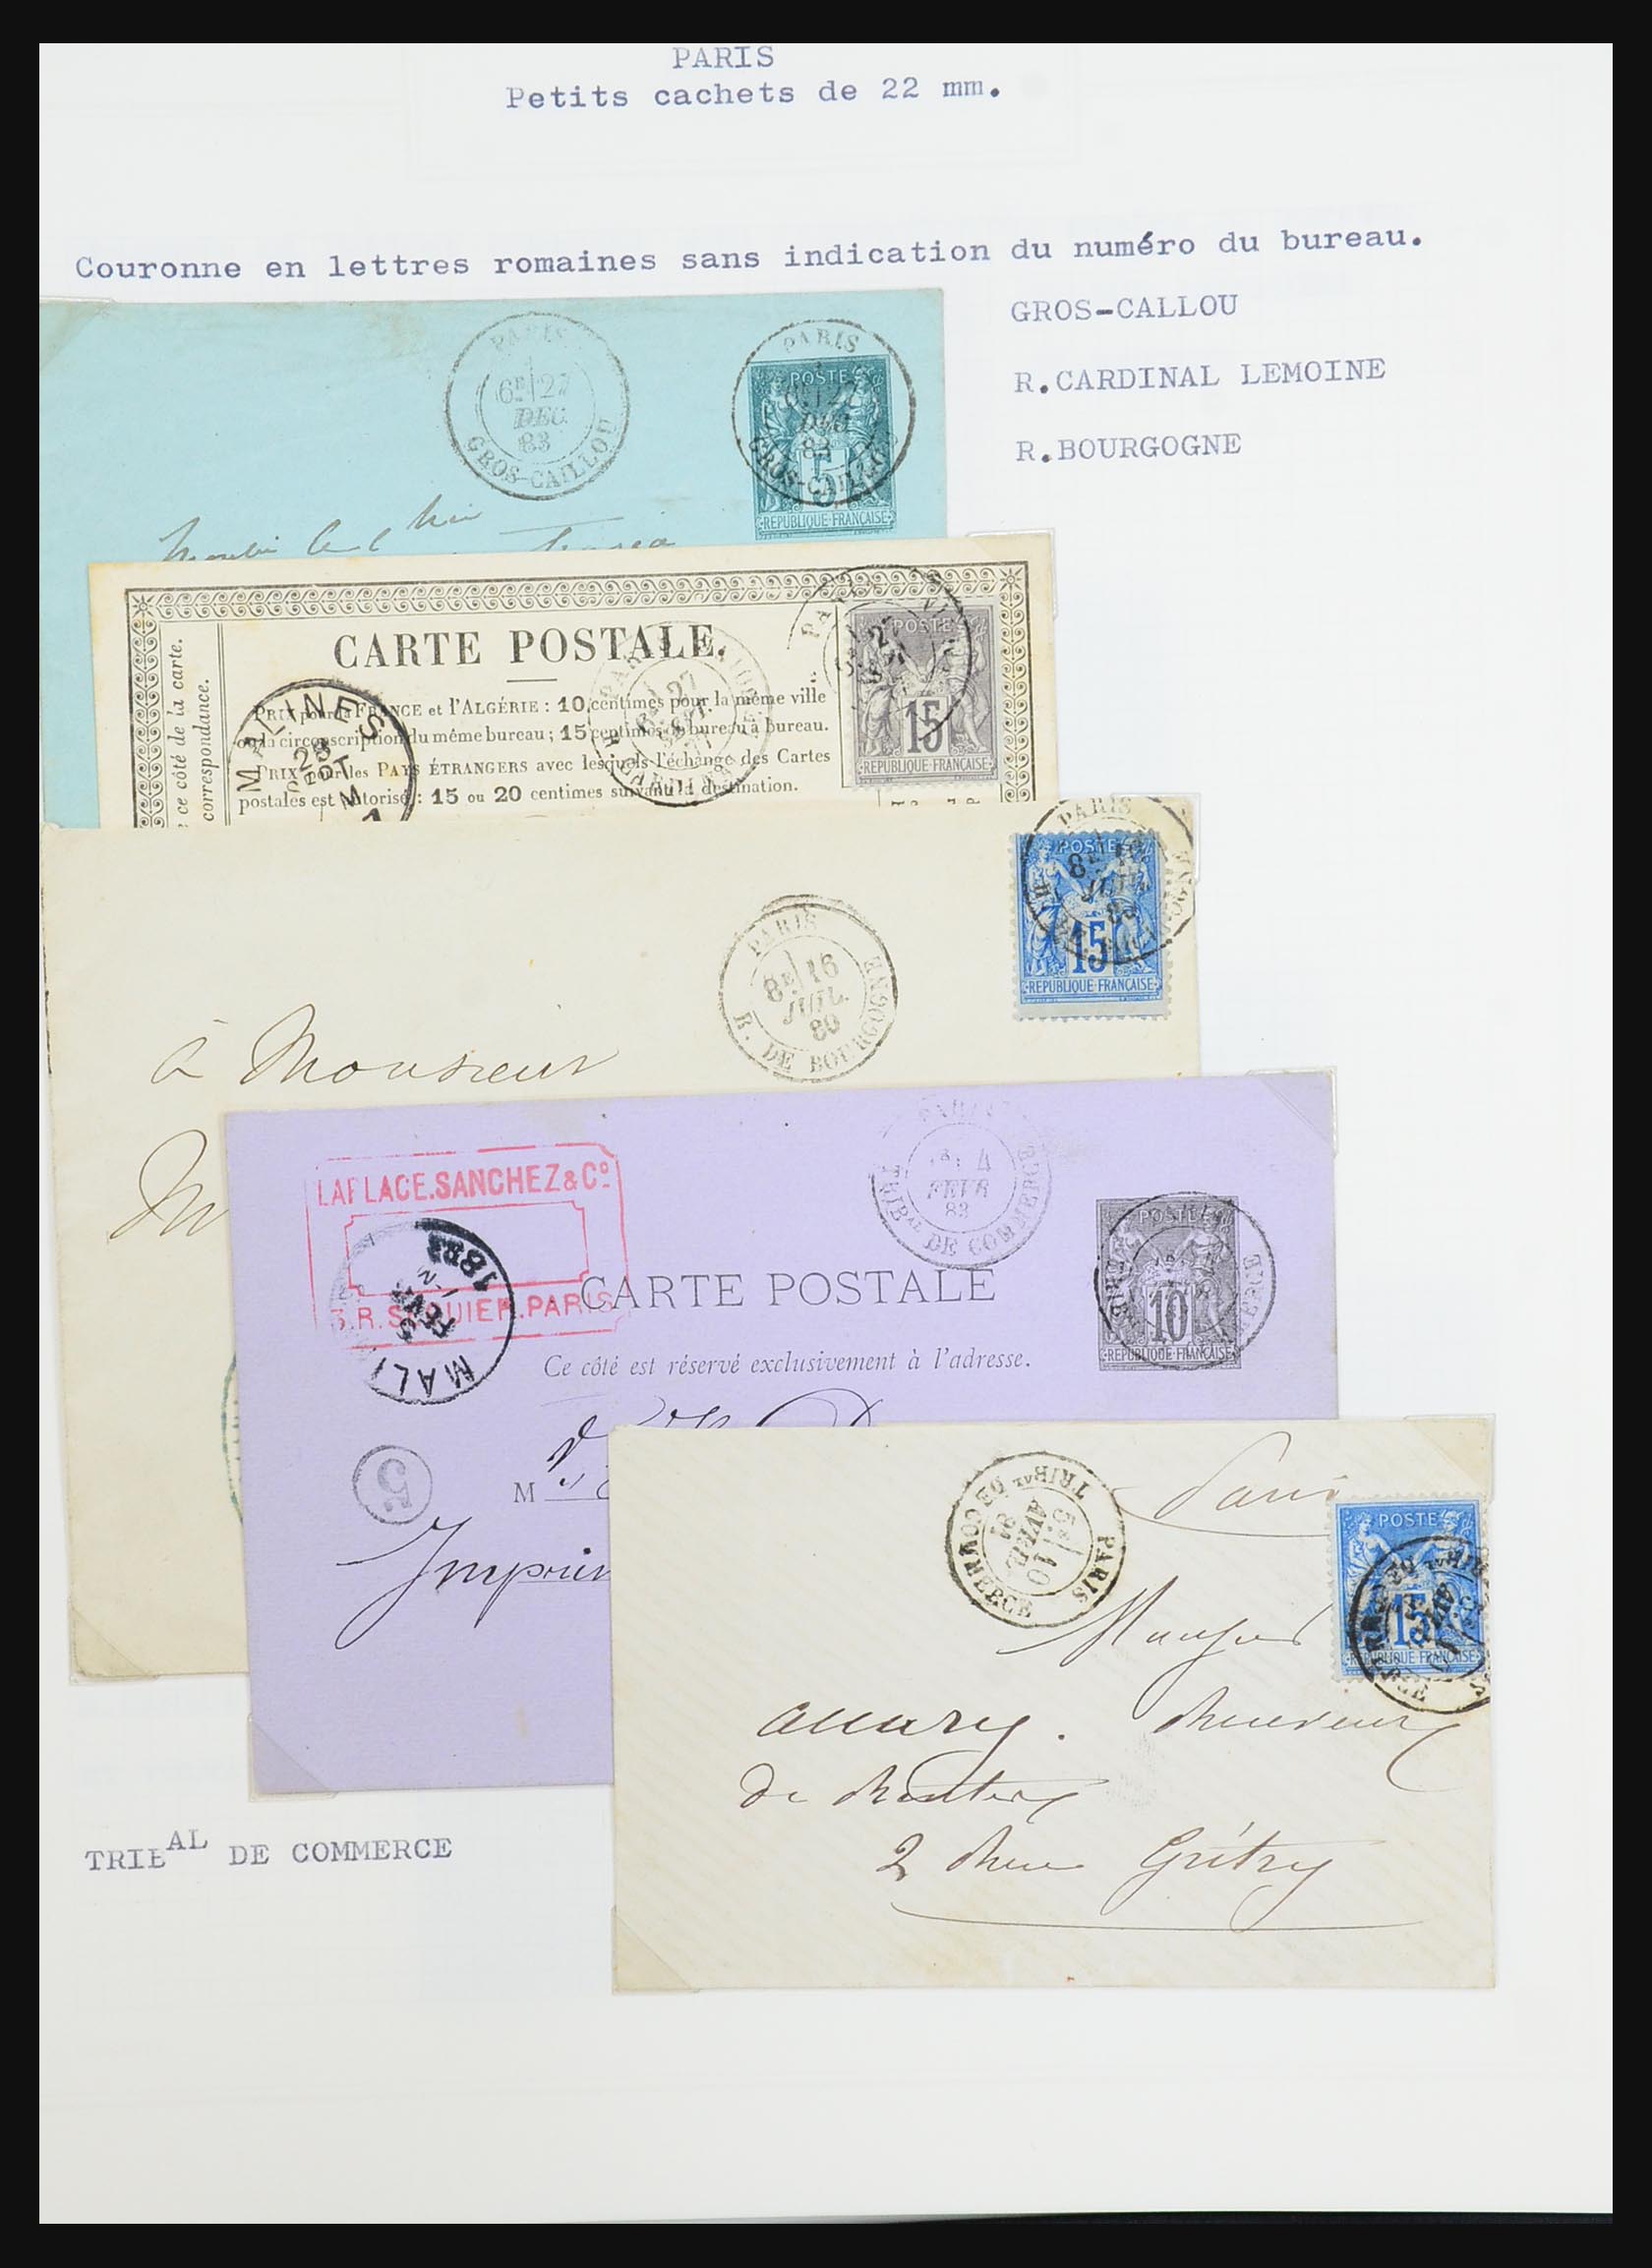 31526 201 - 31526 Frankrijk brieven en stempels 1725 (!)-1900.